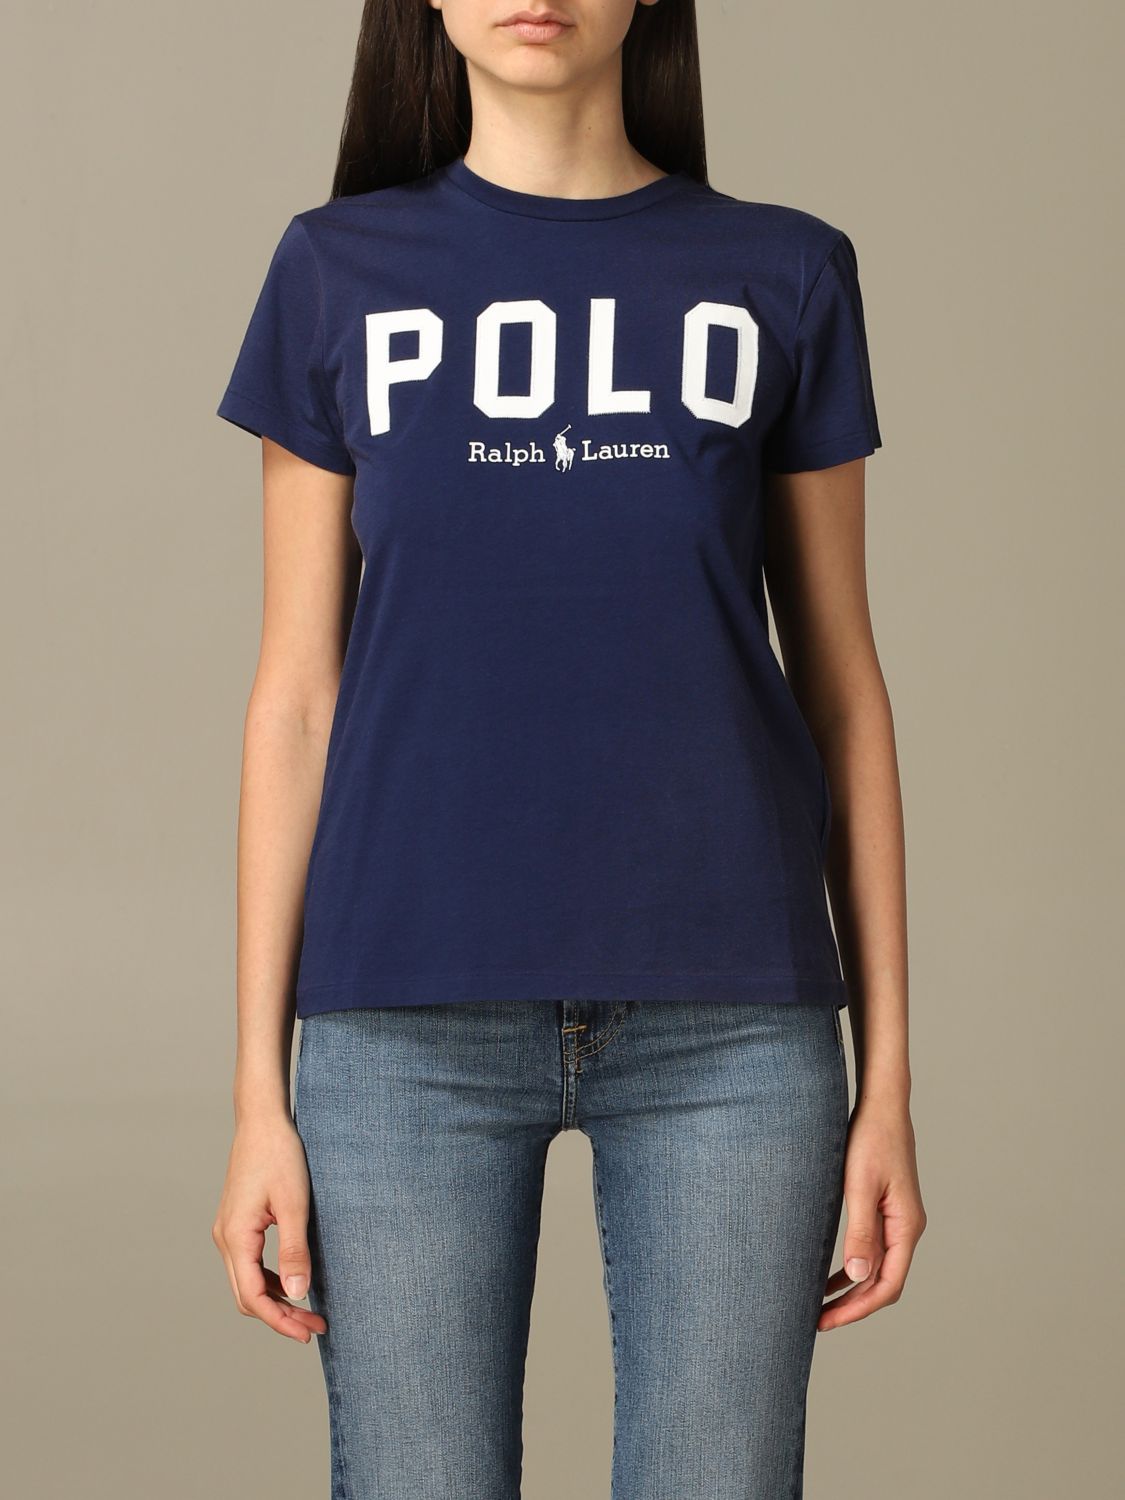 Polo Ralph Lauren Outlet: Damen pullover - Navy | Polo Ralph Lauren